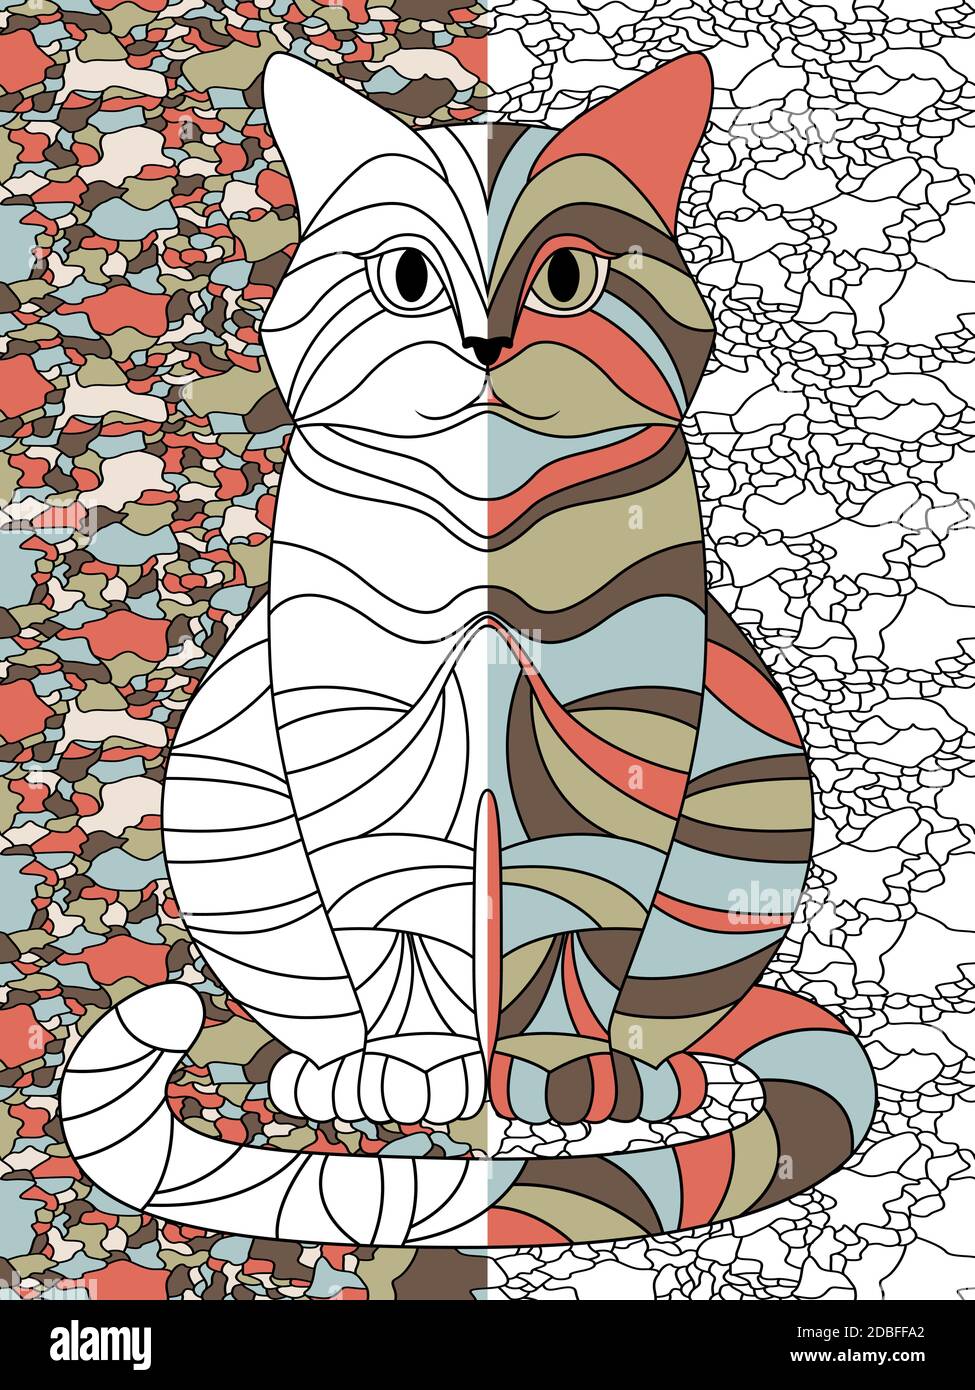 Gatto divertente e serio sullo sfondo del mosaico, disegno a mano di illustrazione vettoriale come un libro da colorare Illustrazione Vettoriale